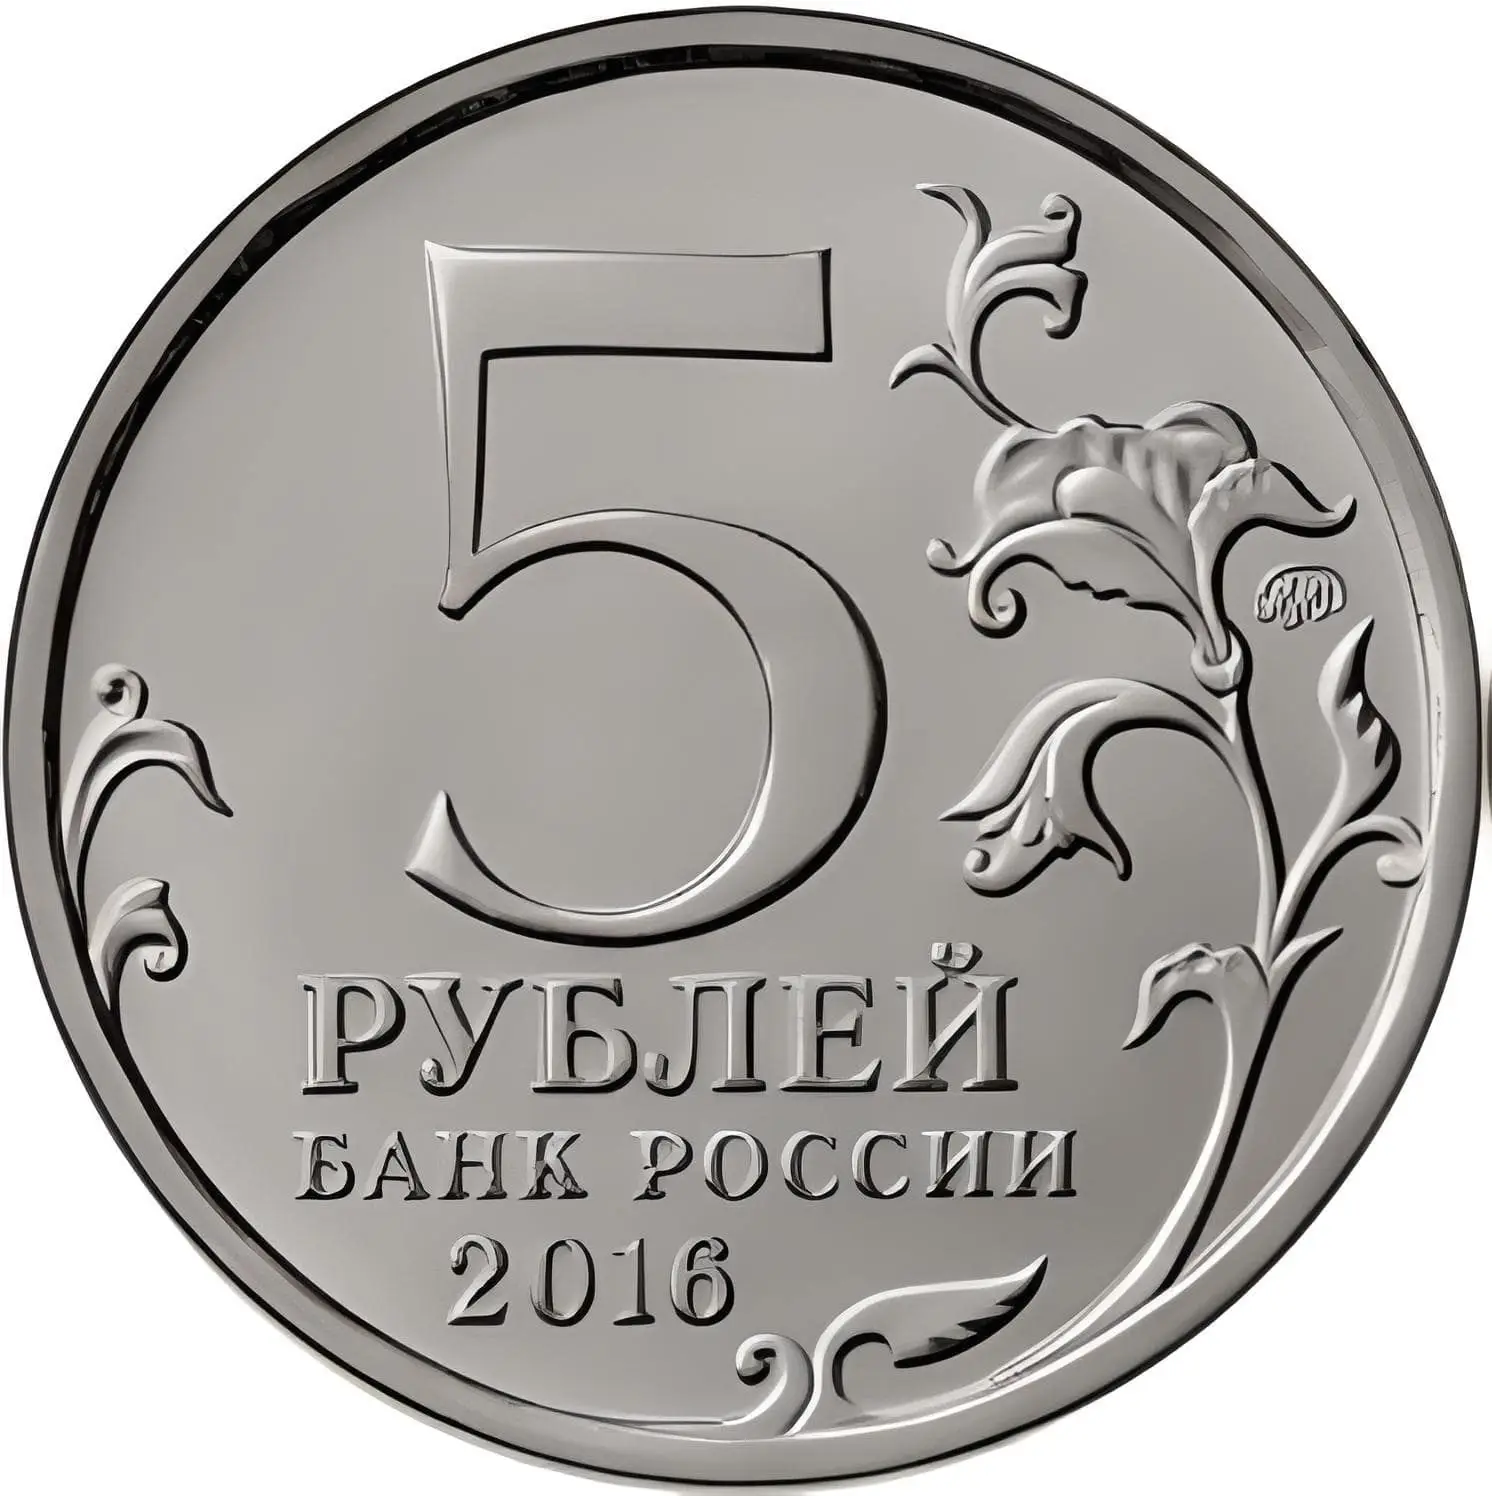 5 рублей стороны. Монета 5 рублей. Изображение 5 рублей. Монета 2 рубля на прозрачном фоне. Монета 5 руб для фотошопа.